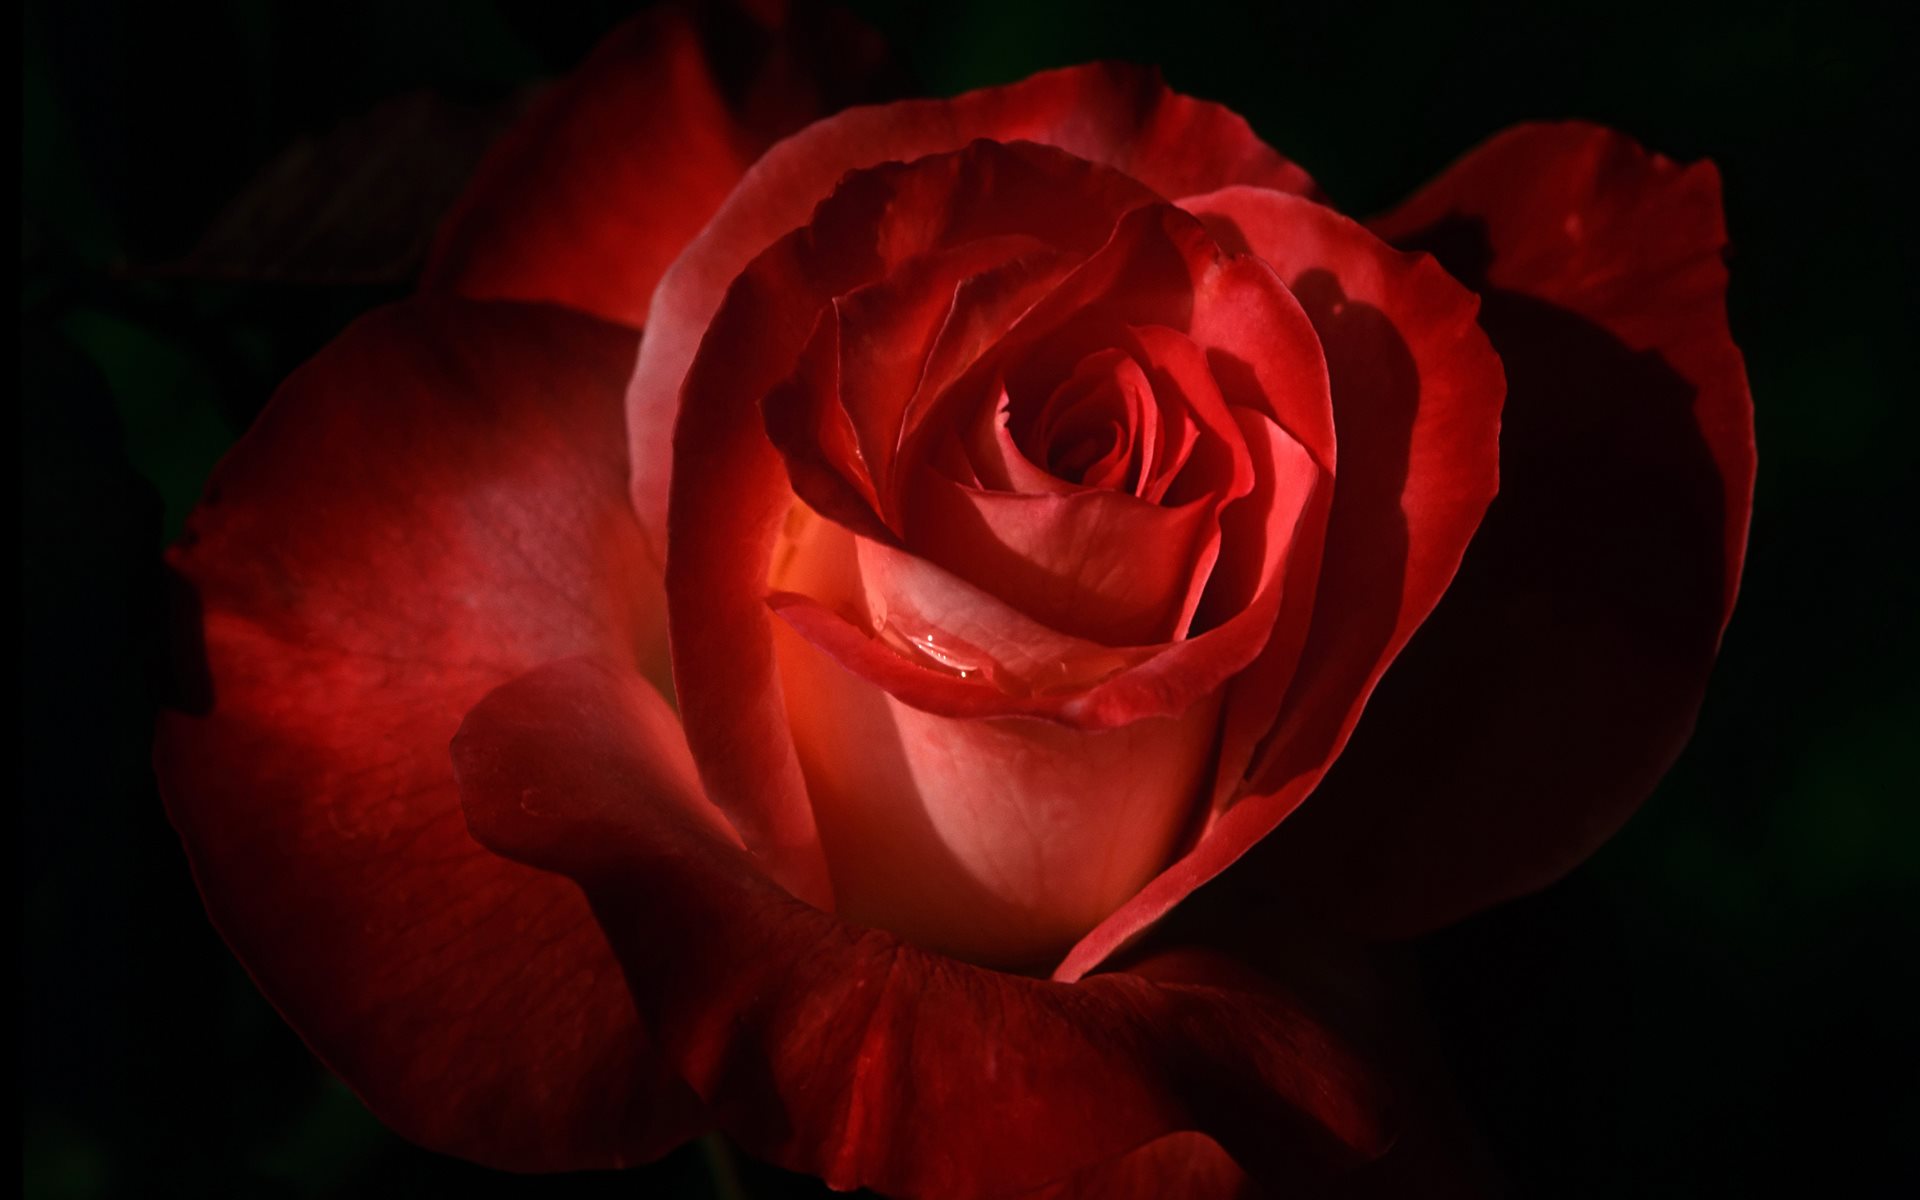 Dark Red Rose Wallpaper - Roses Theme - HD Wallpaper 